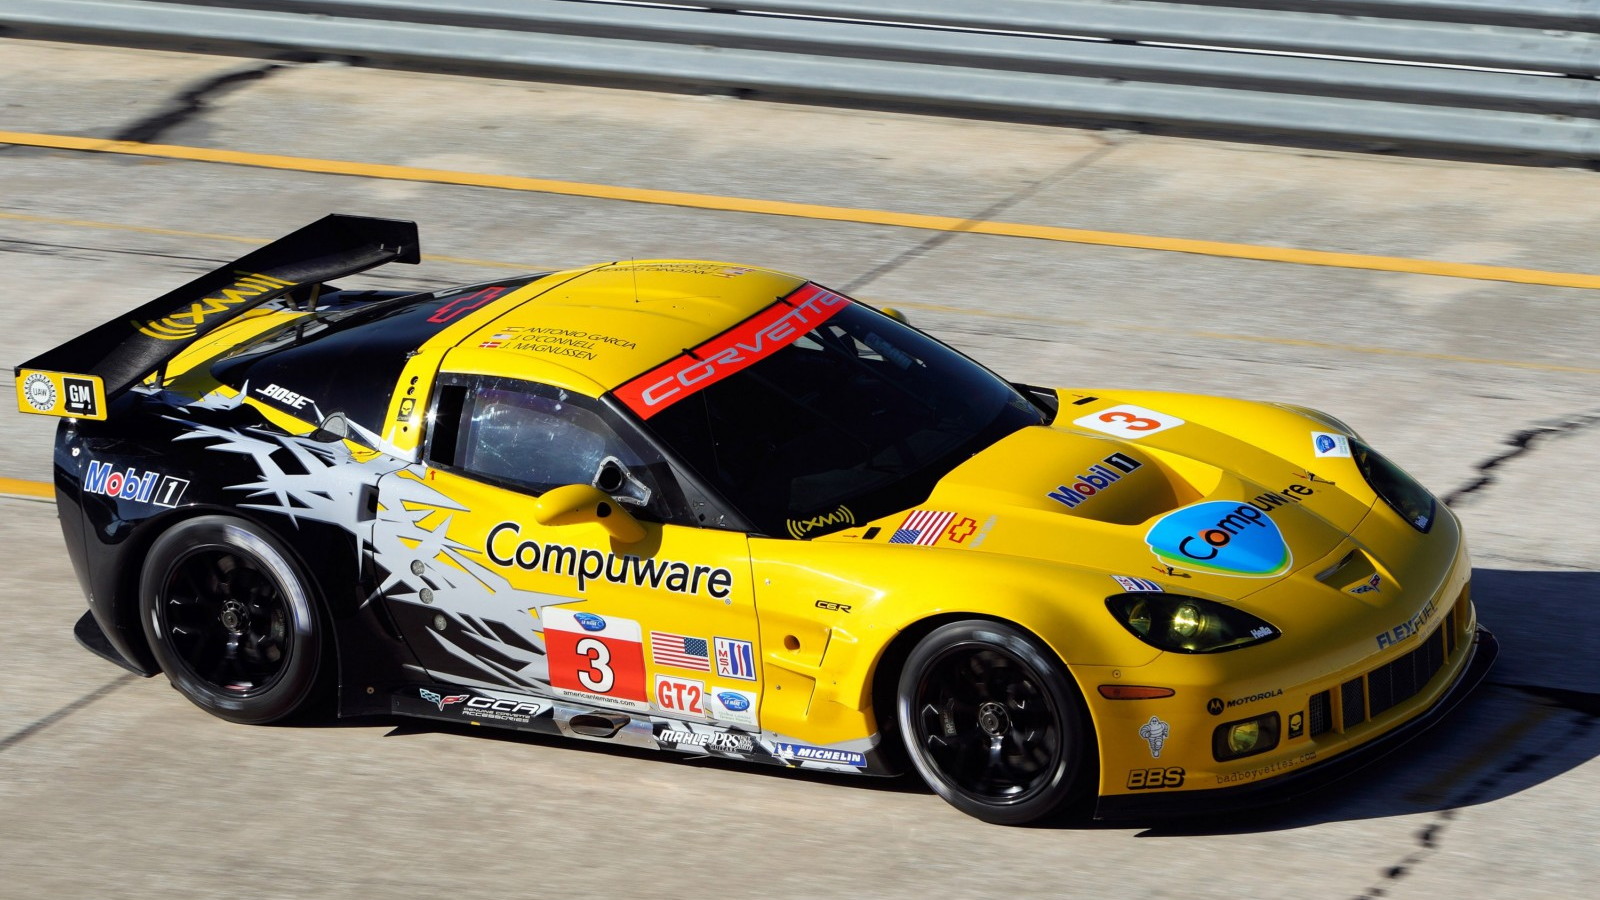 2010 Corvette C6.R based on Corvette ZR1